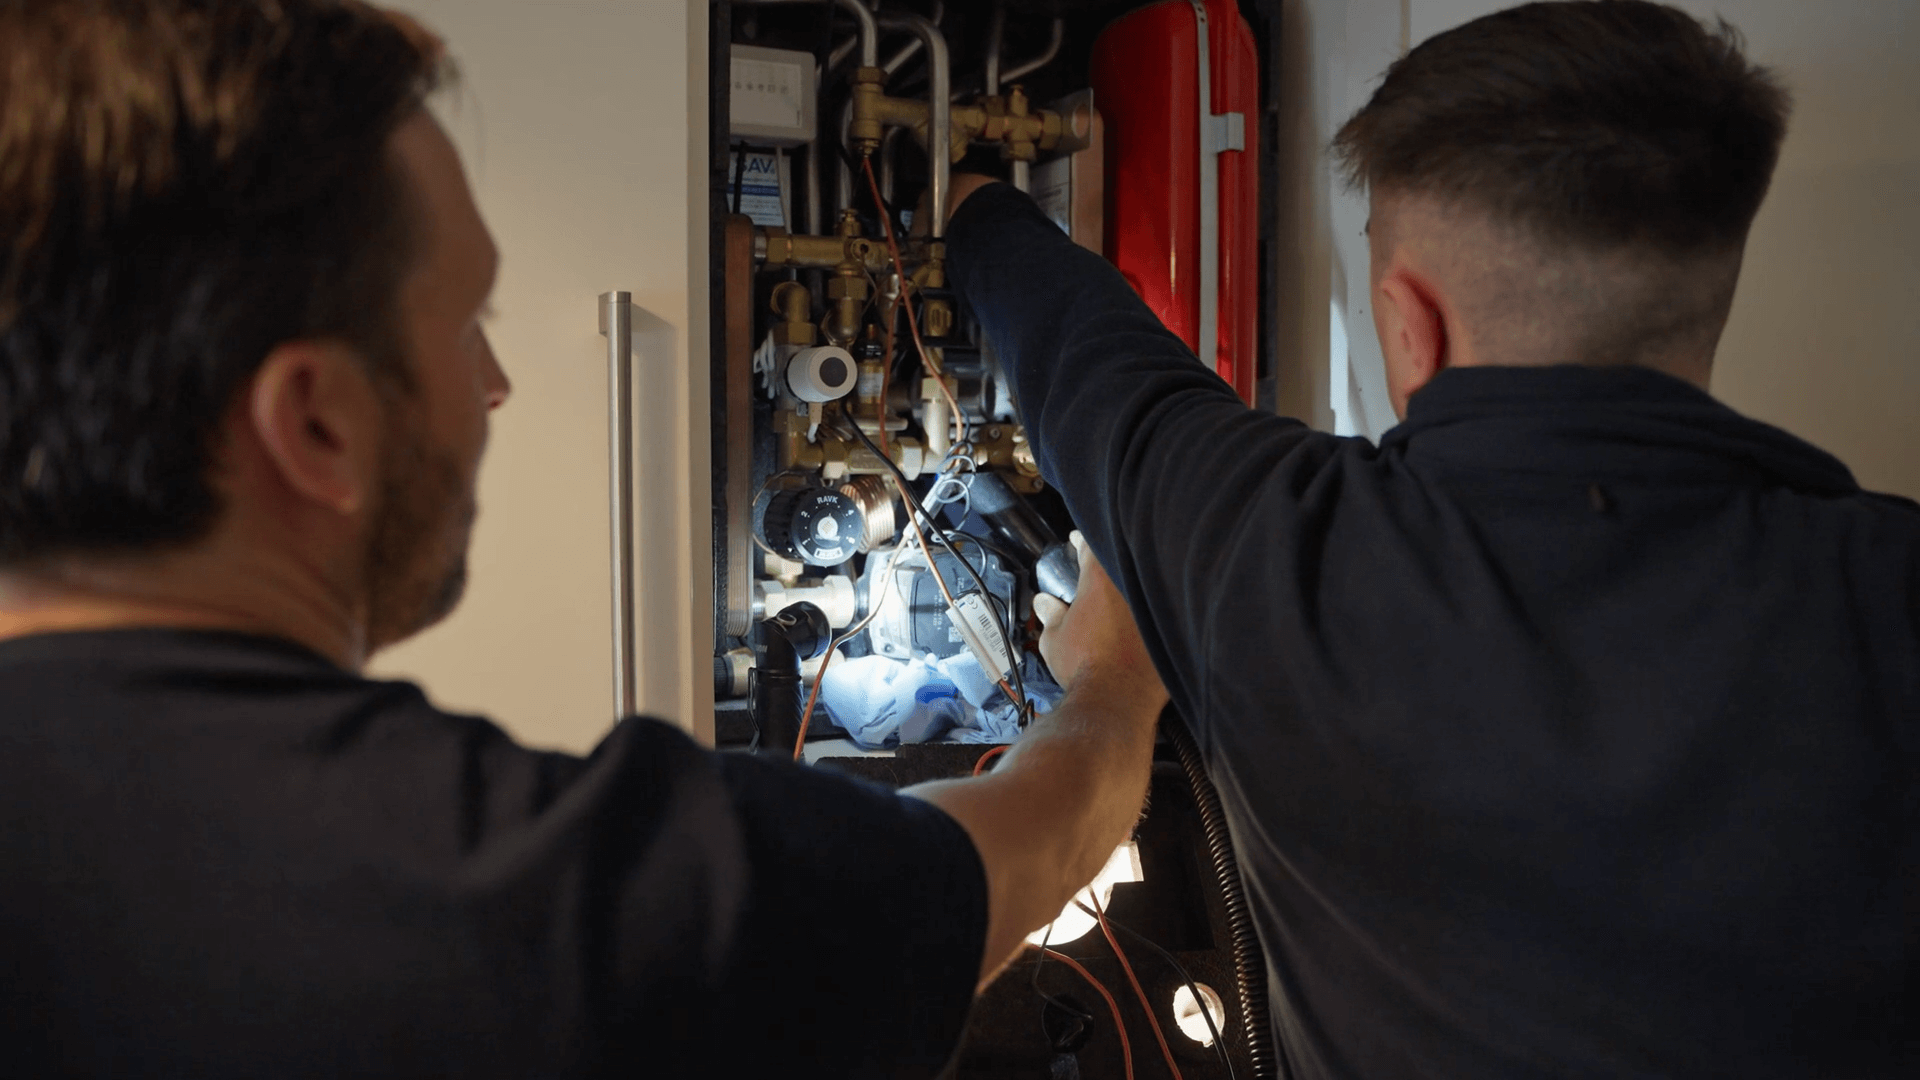 ClwydAlyn plumbers fixing boiler